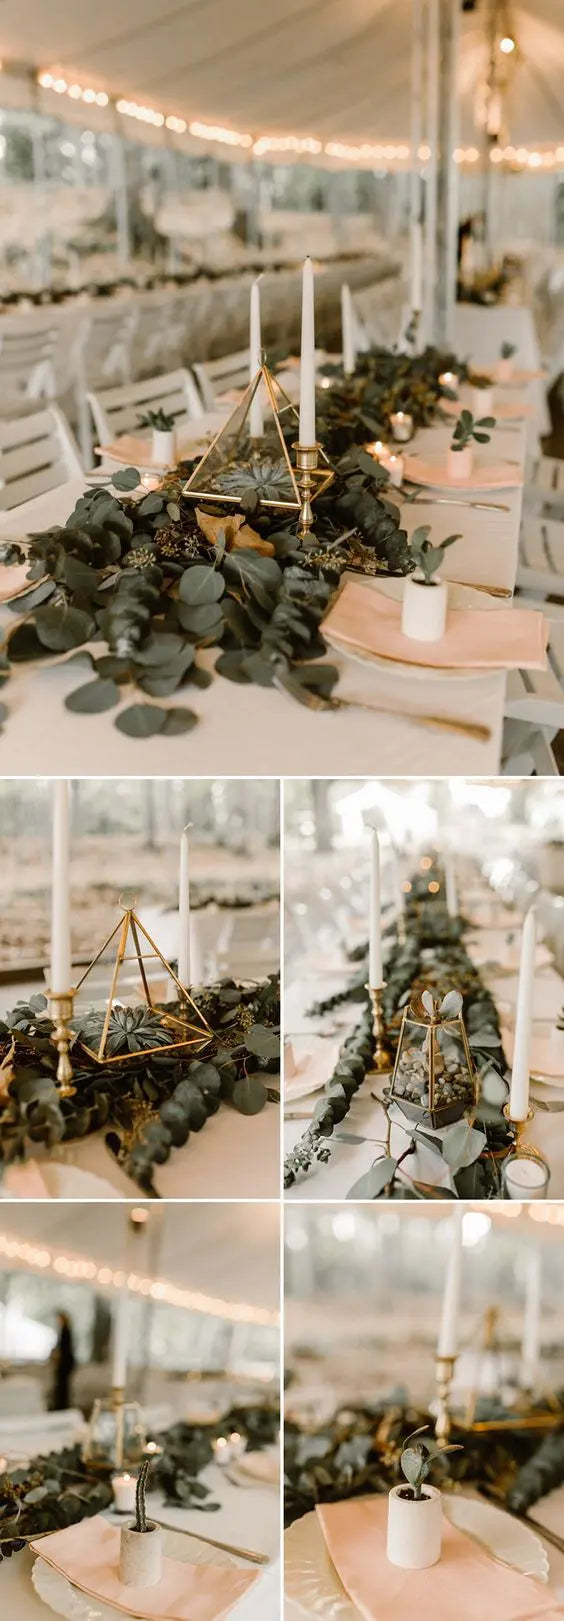 wedding table decorations terrarium